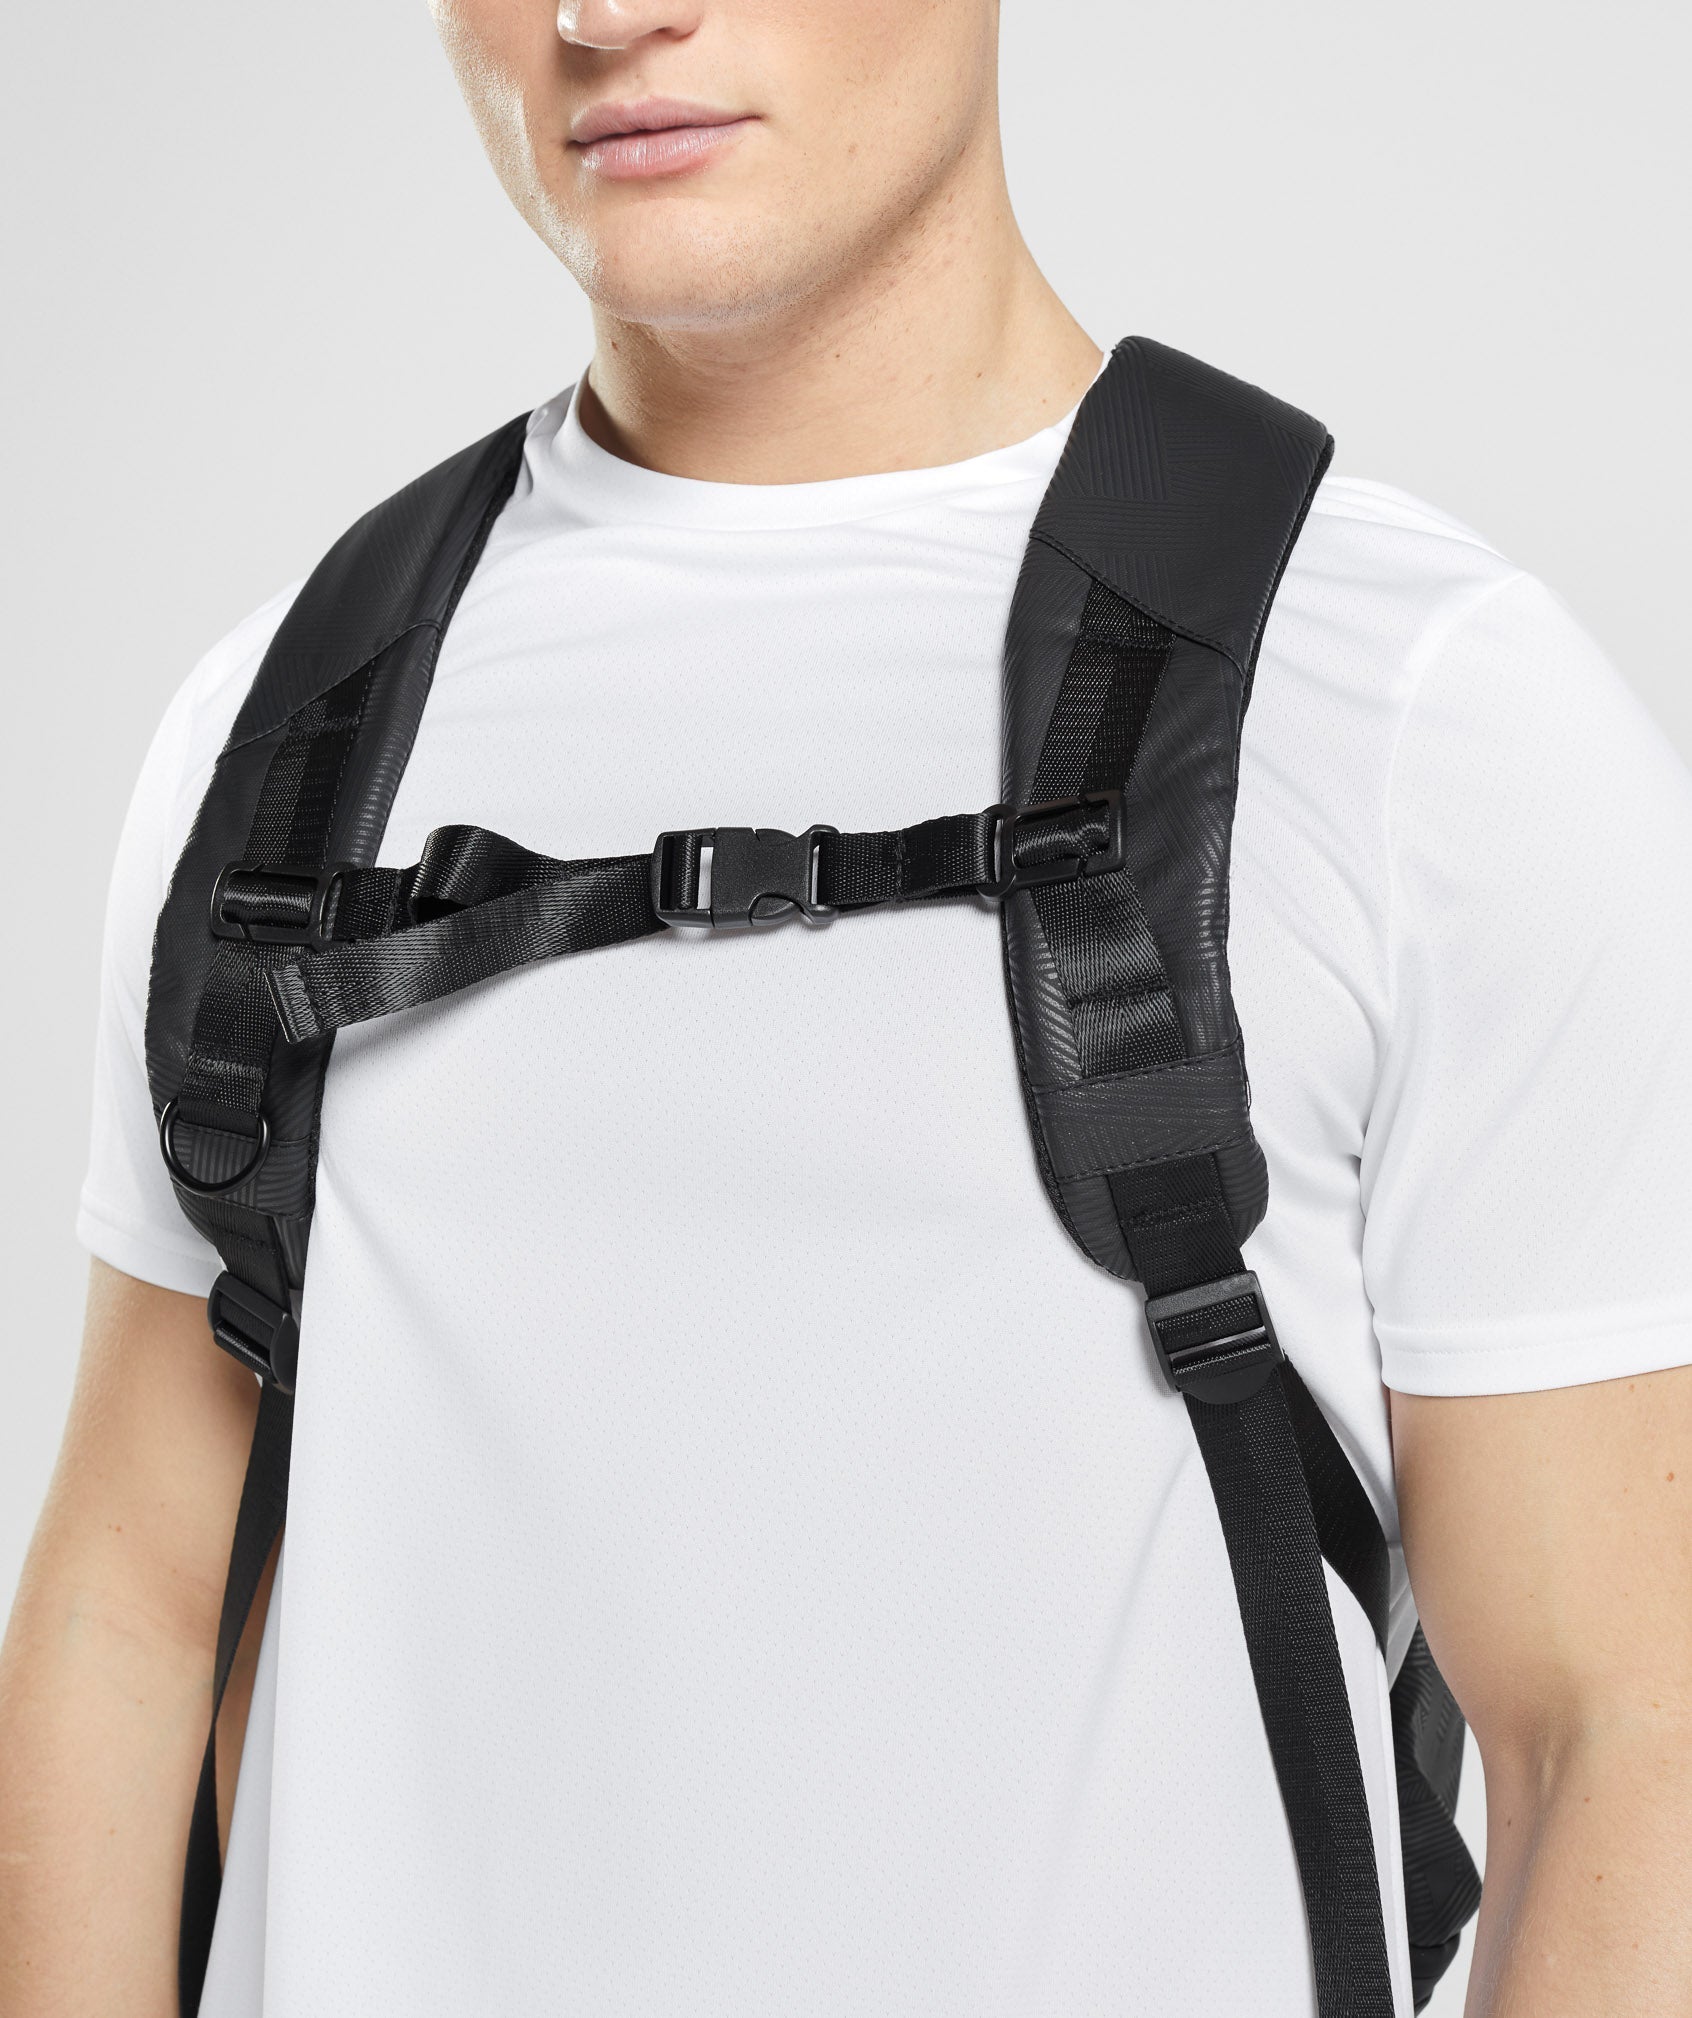 X-Series 0.3 Backpack in Black Print - view 6